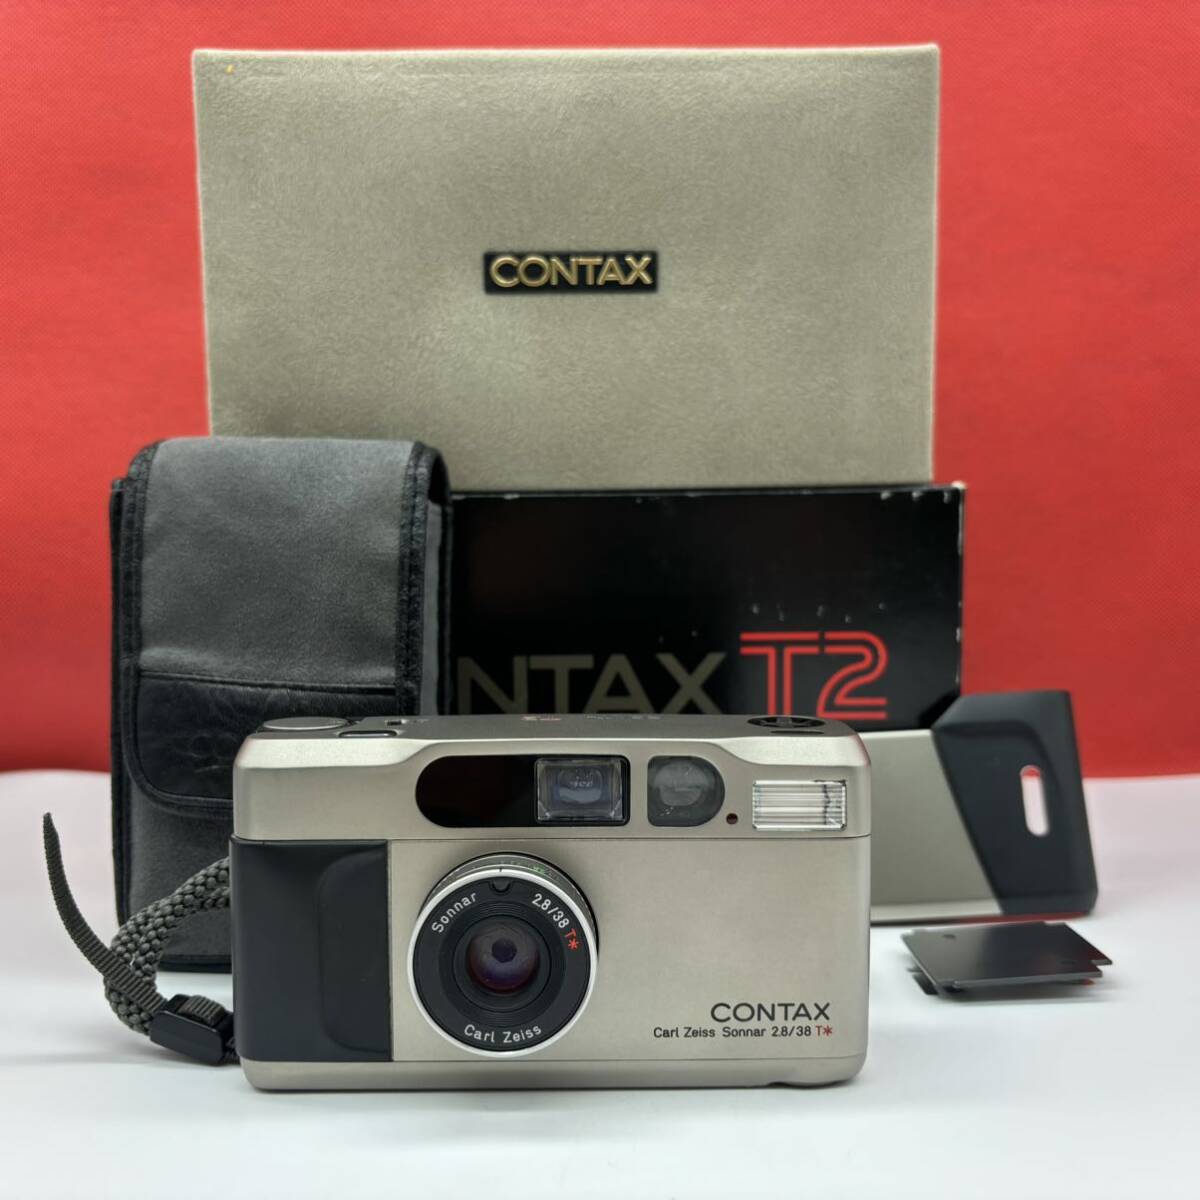 ◆ CONTAX T2 フィルムカメラ コンパクトカメラ Carl Zeiss Sonnar 2.8/38 T* シャッター、フラッシュOK ケース付 コンタックスの画像1